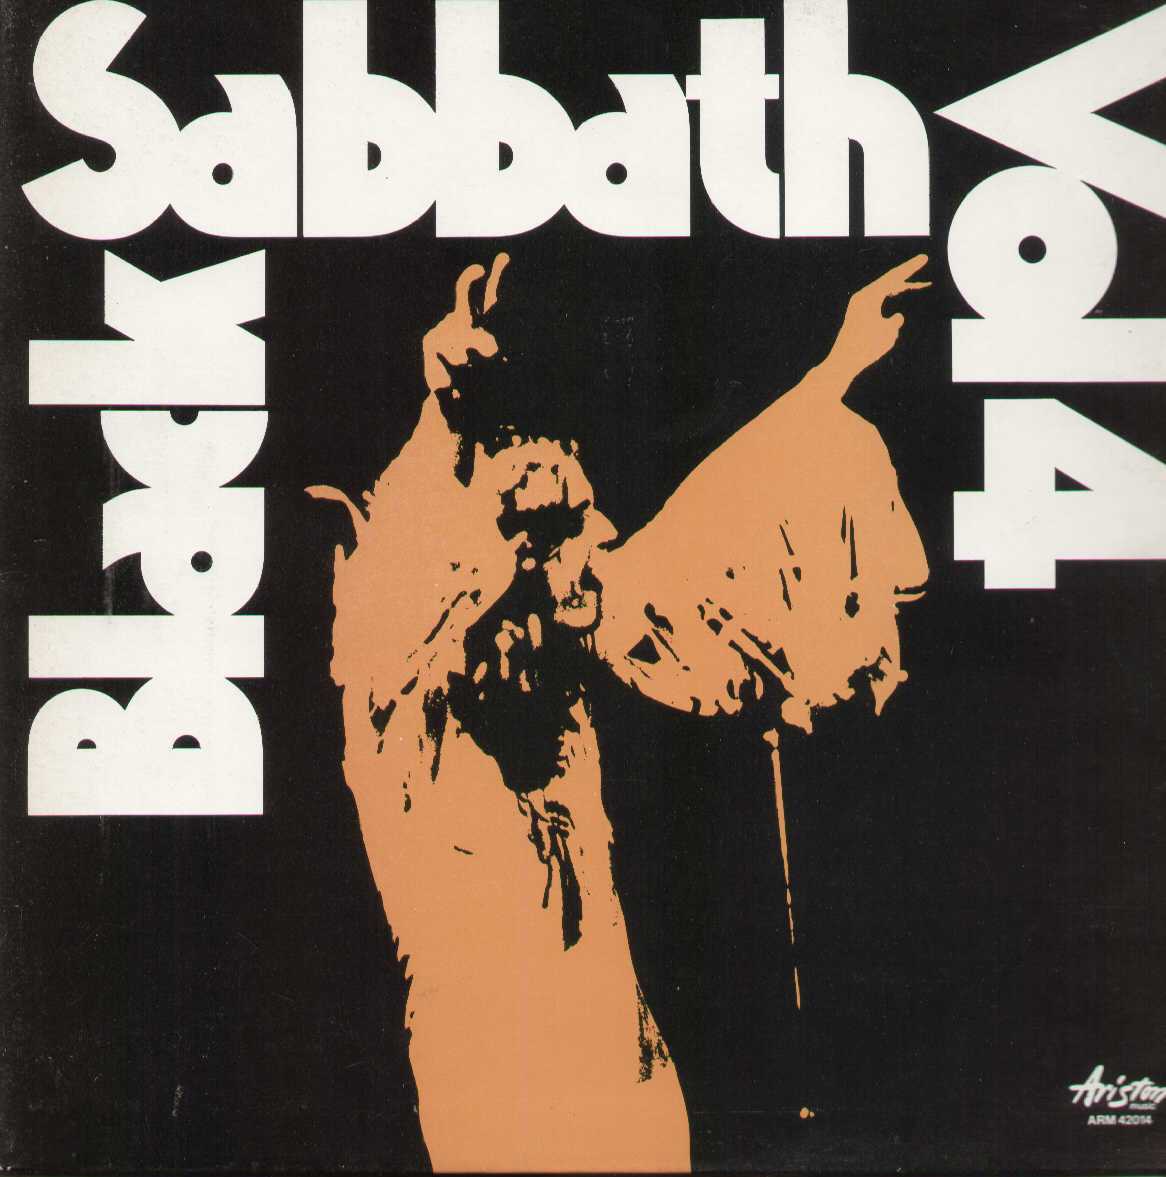 Black Sabbath, Vol.4